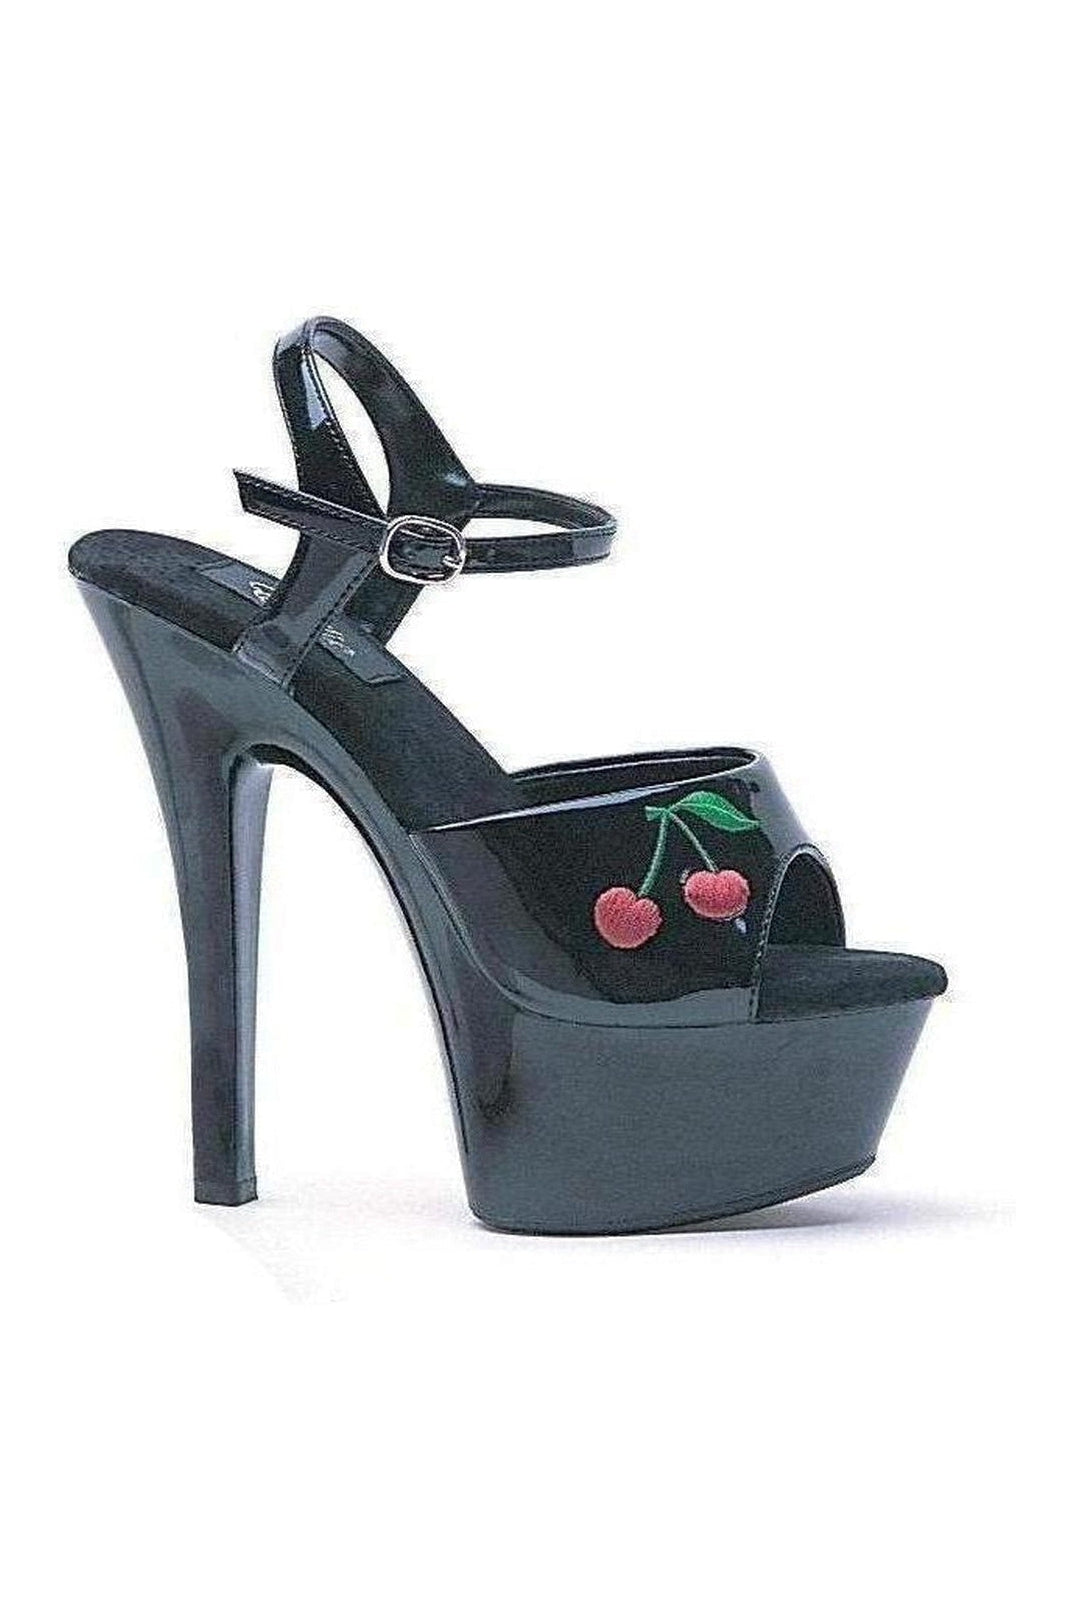 601-CHERRY Platform Sandal | Black Patent-Ellie Shoes-Black-Sandals-SEXYSHOES.COM